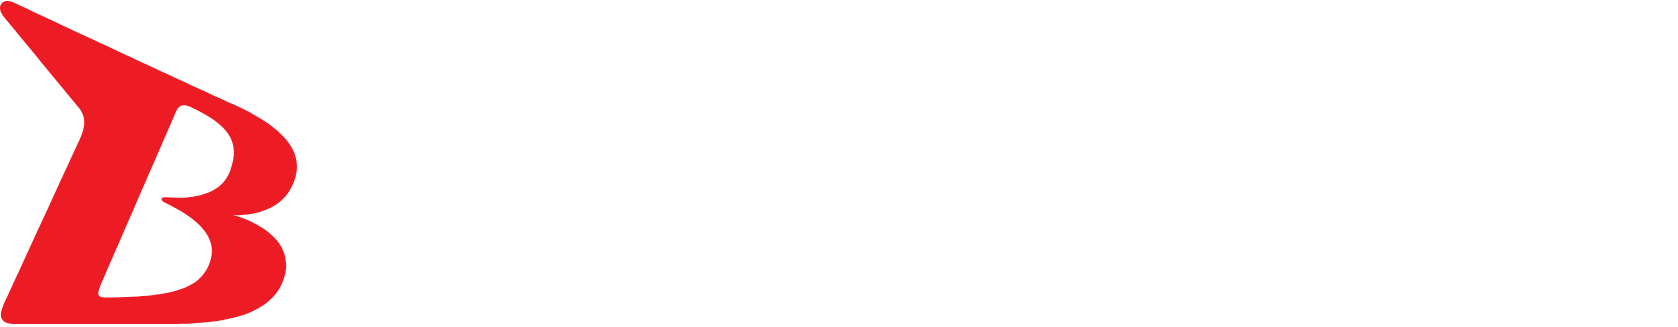 Bushiroad logo grand pour les fonds sombres (PNG transparent)